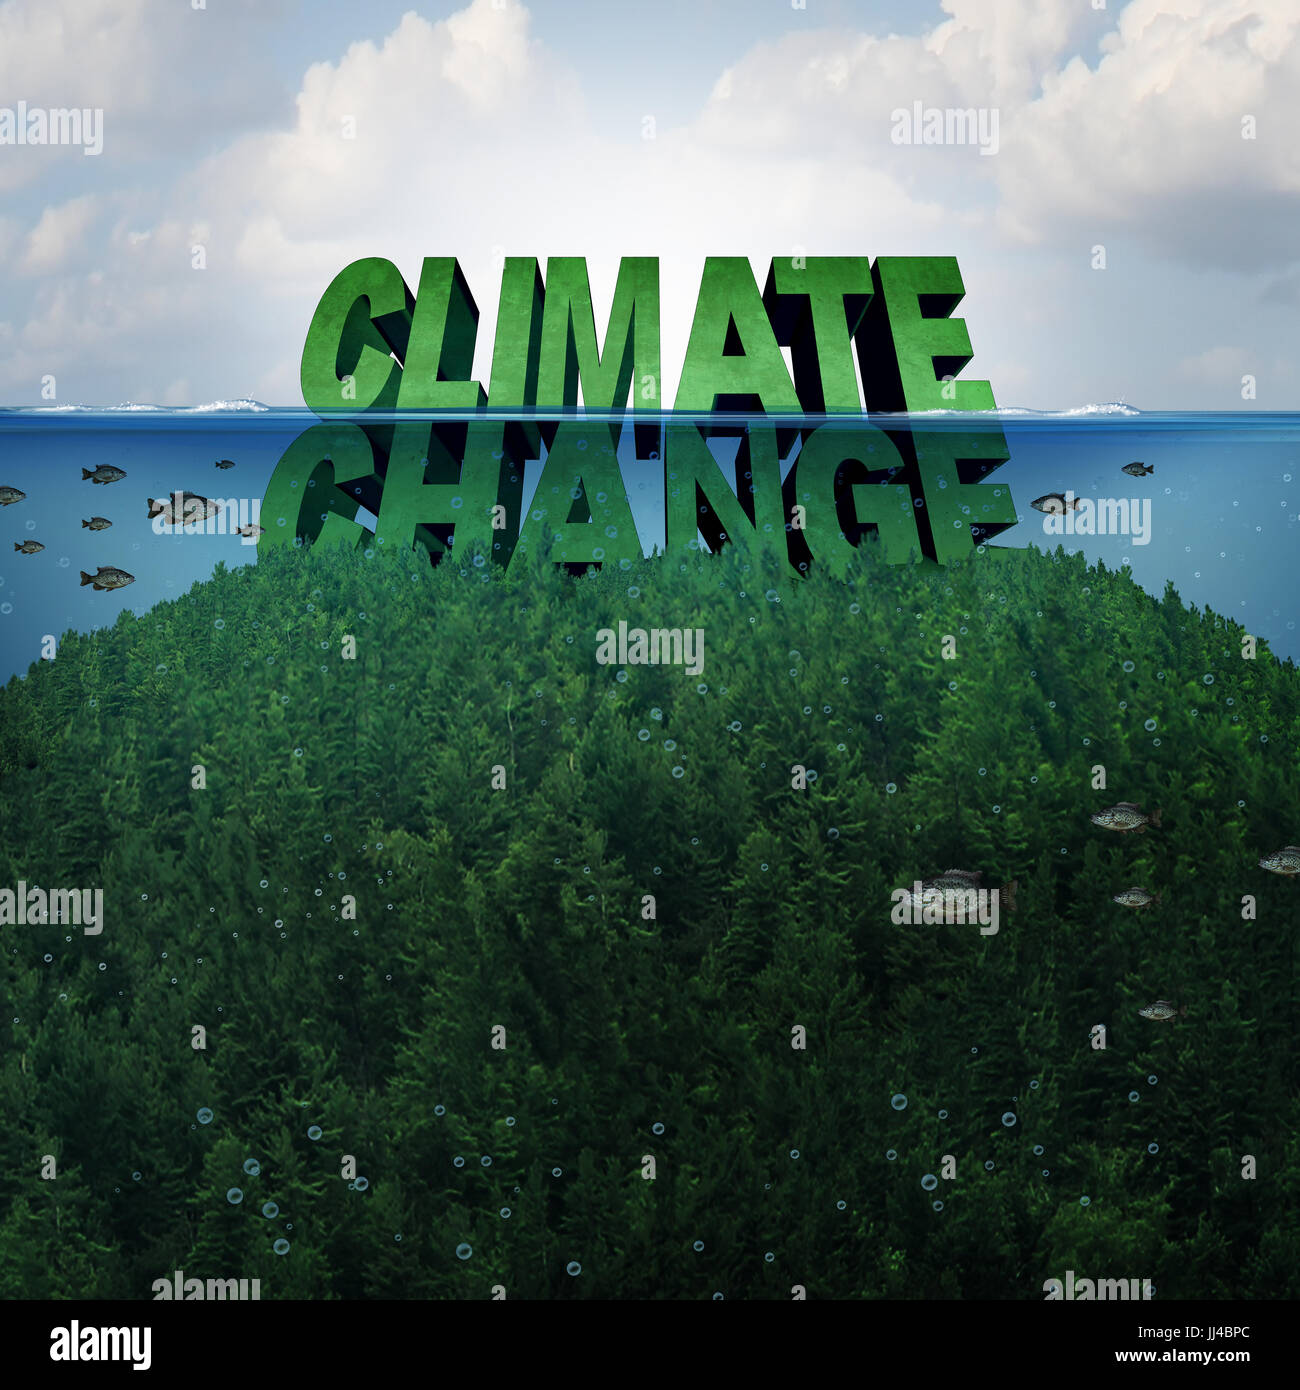 Klimawandel und extreme Wetter Bedingungen Konzept und steigende Meeresspiegel aufgrund der globalen Erwärmung und Abschmelzen der polaren Eiskappen. Stockfoto